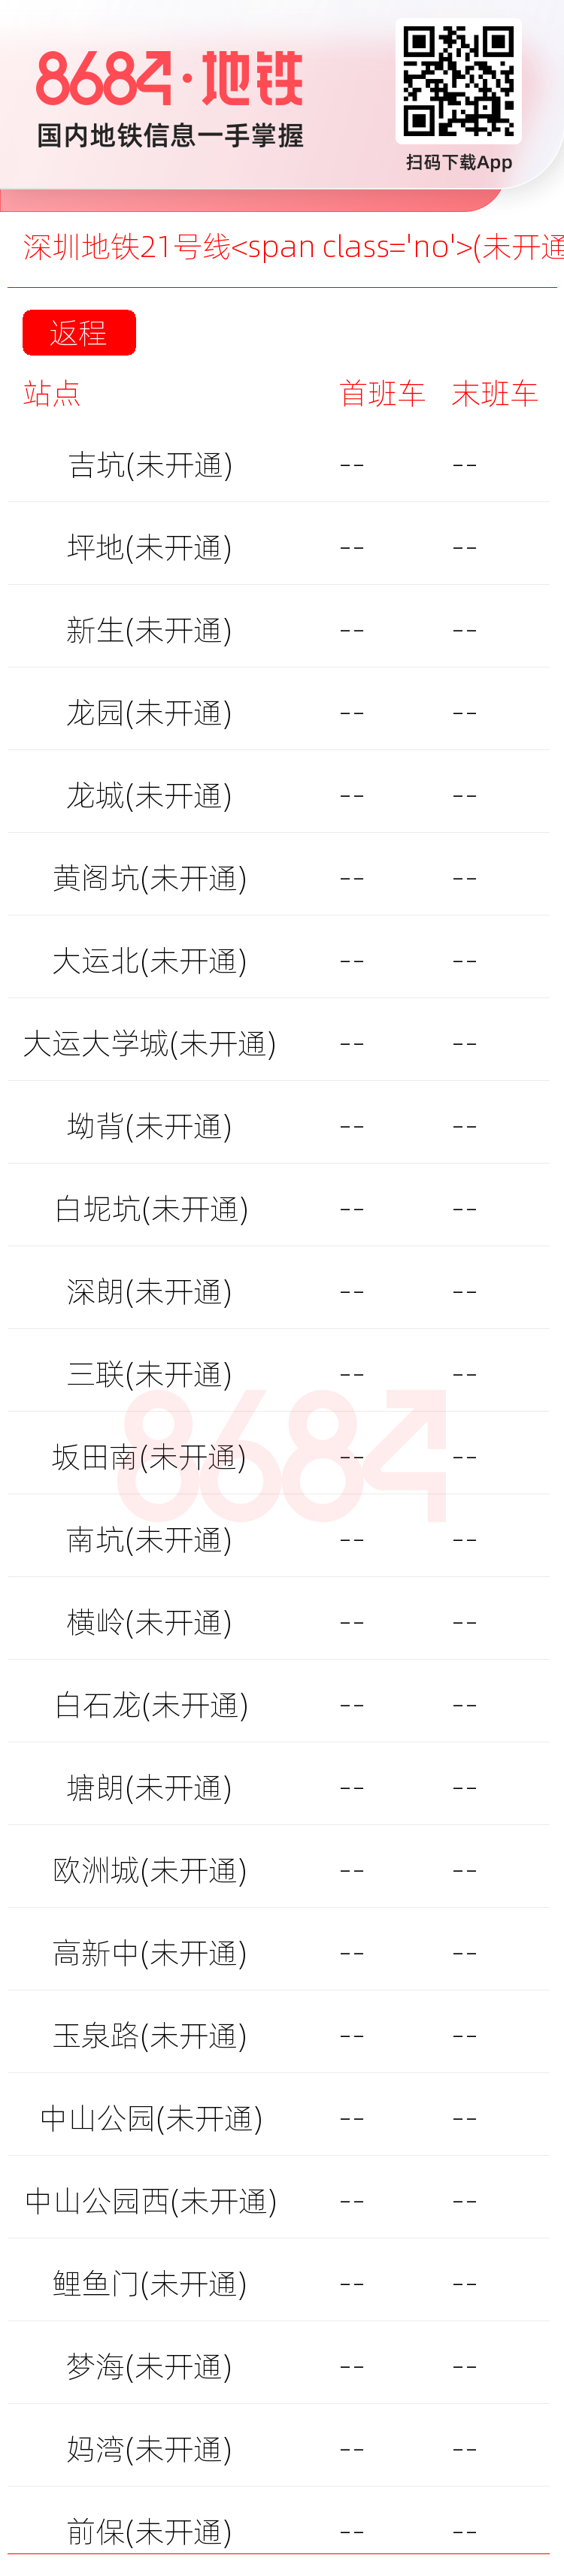 深圳地铁21号线<span class='no'>(未开通)</span>运营时间表